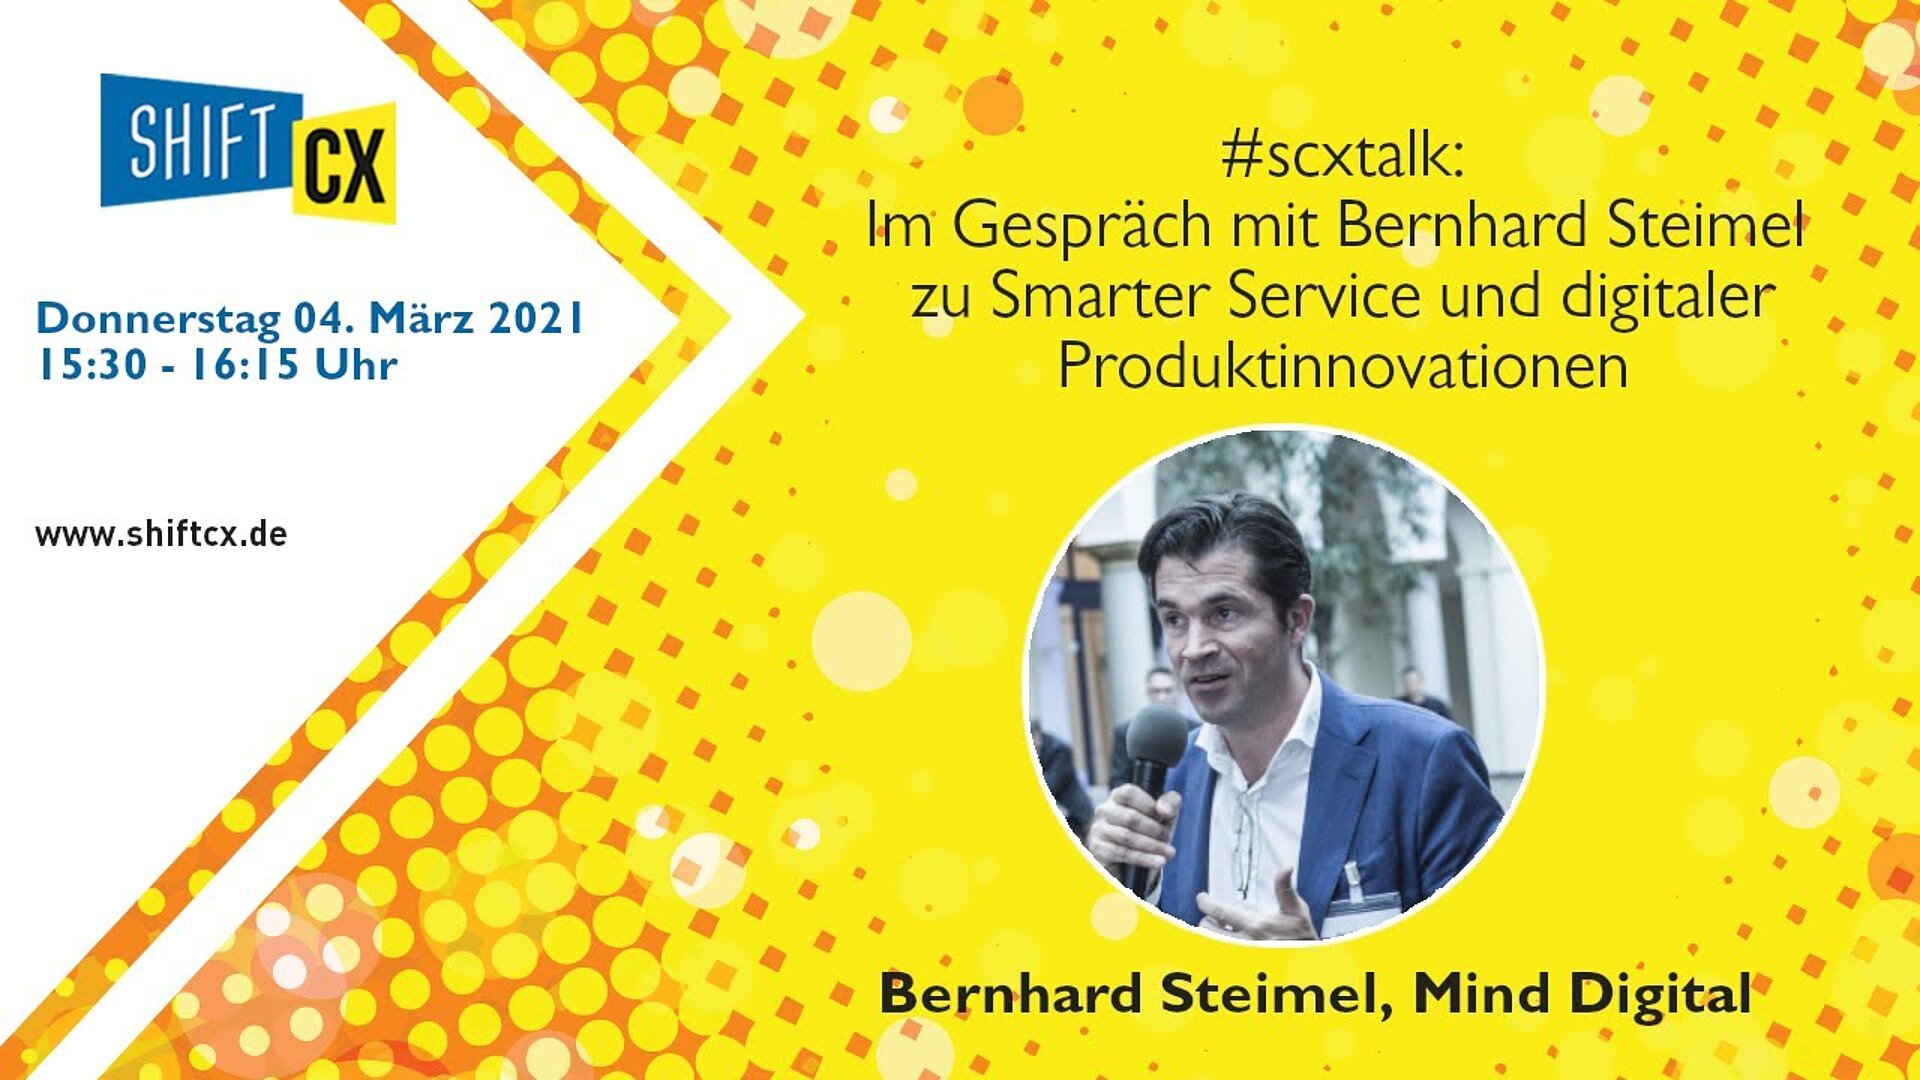 Im Gespräch mit Bernhard Steimel zu Smarter Service und digitaler Produktinnovationen